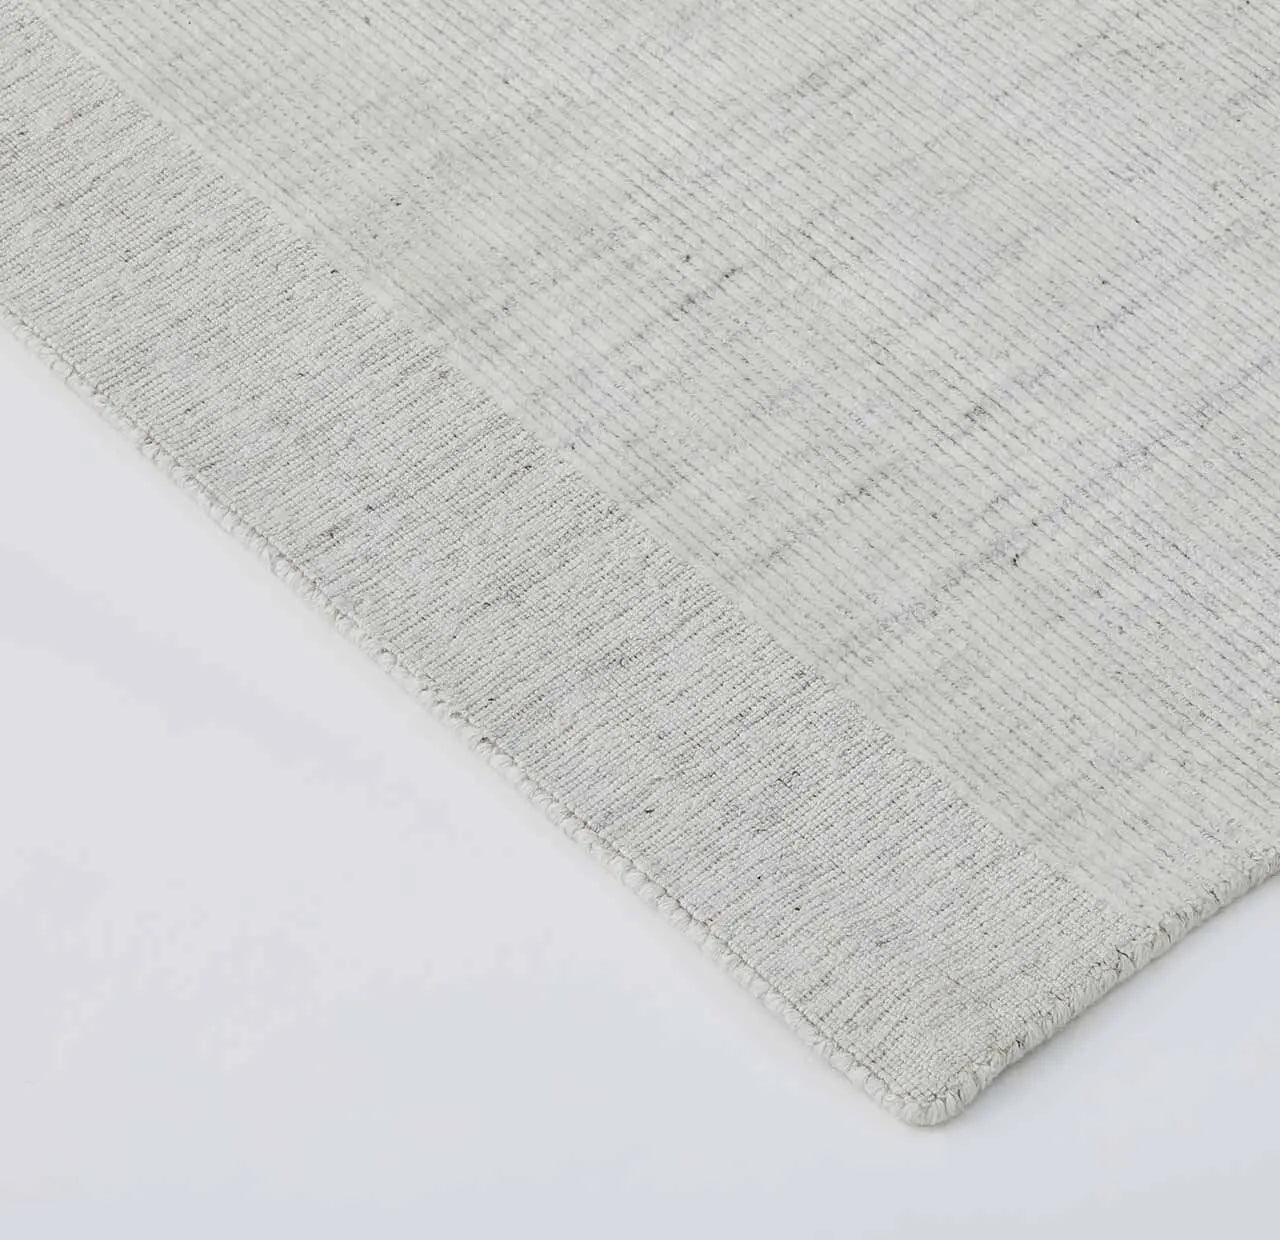 Weave Travertine Floor Rug - Marble - 2m x 3m - RugRTV71MARB9326963003164 3